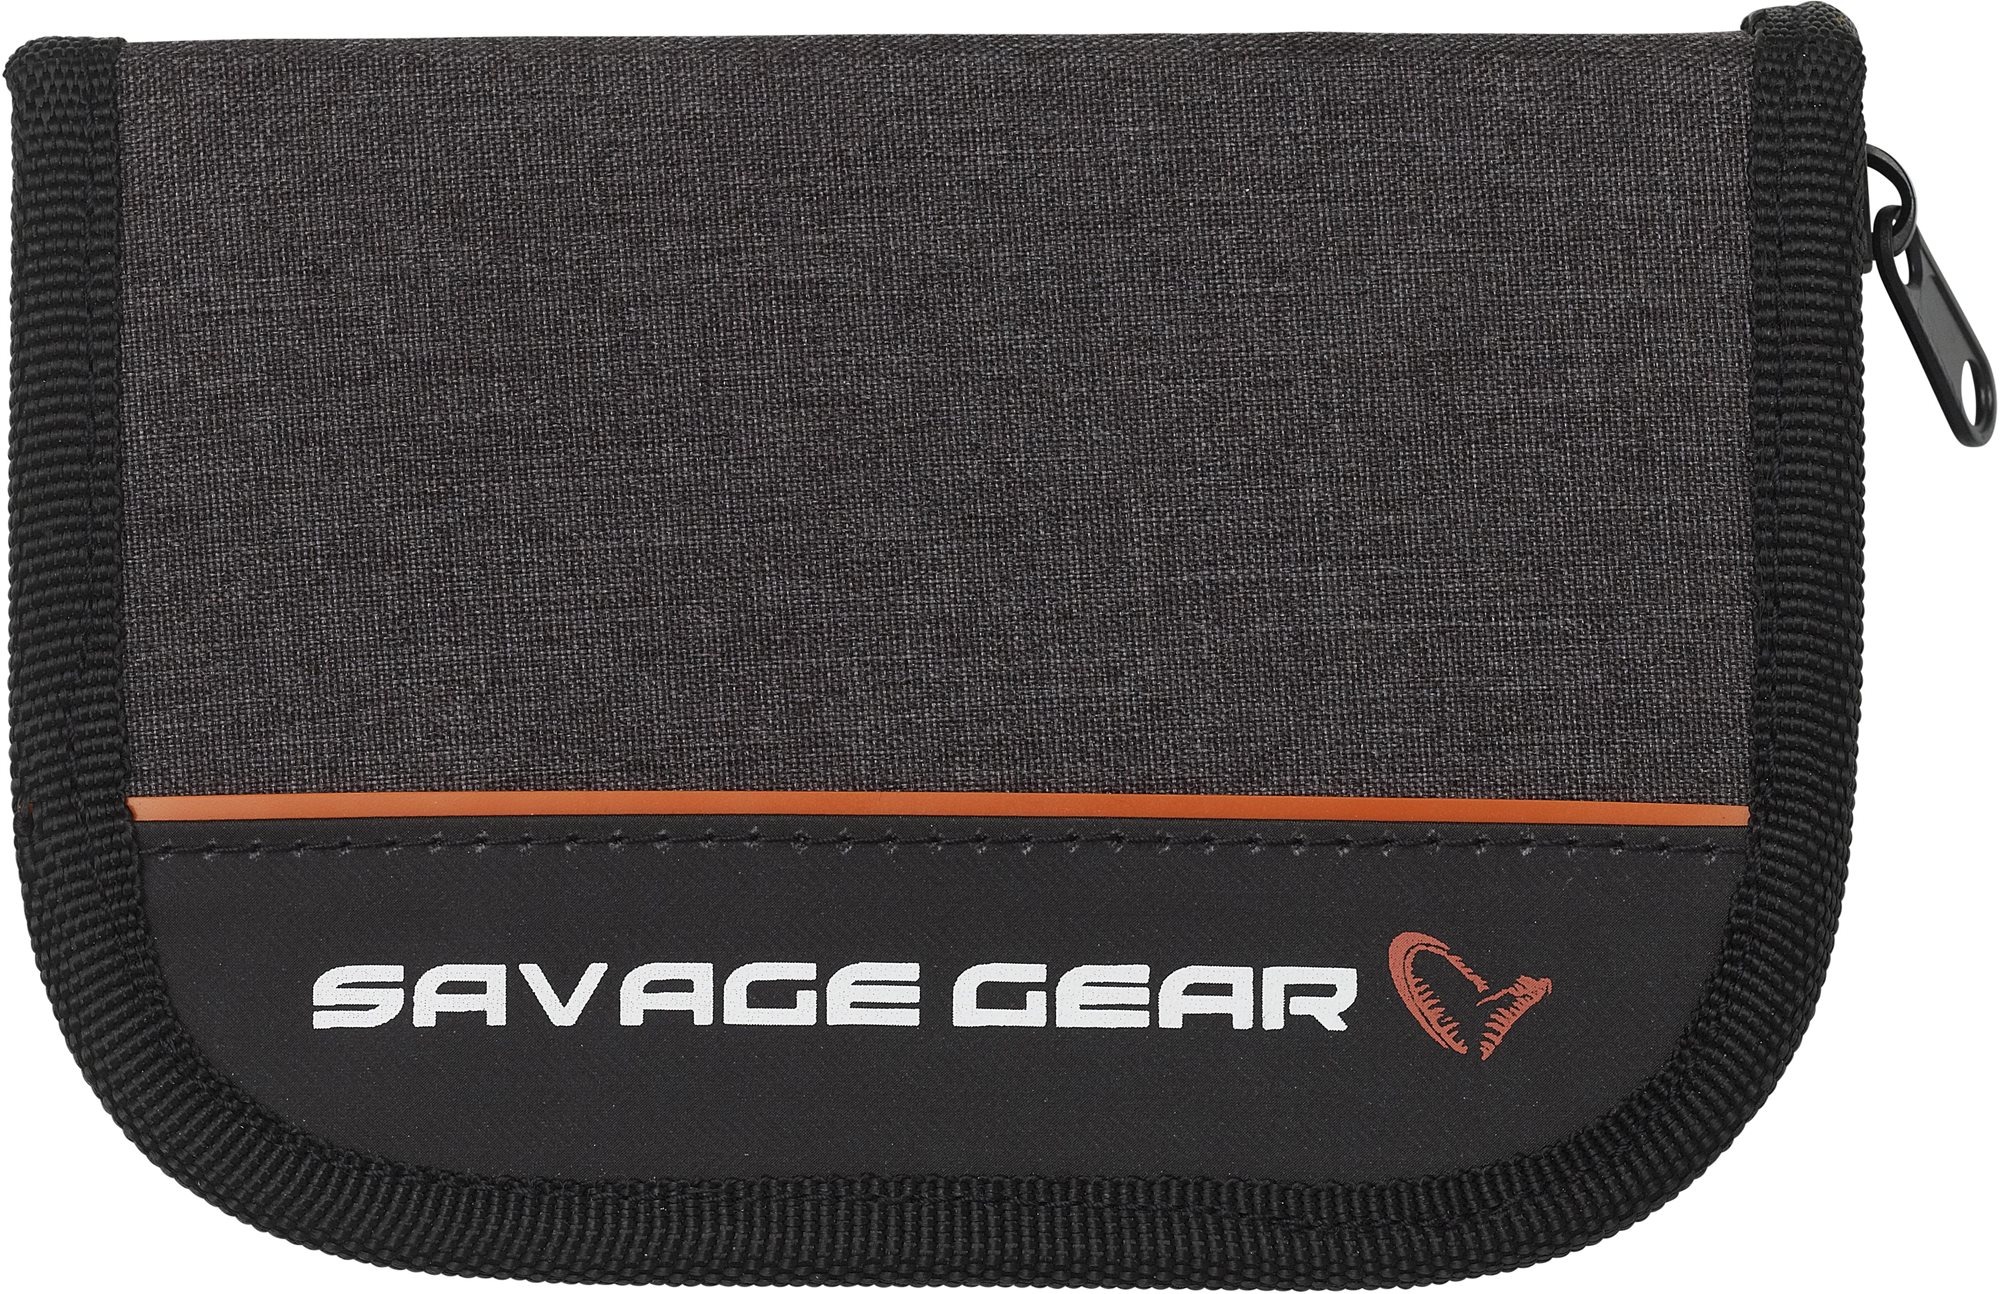 Horgász tároló Savage Gear Zipper Wallet1 Holds